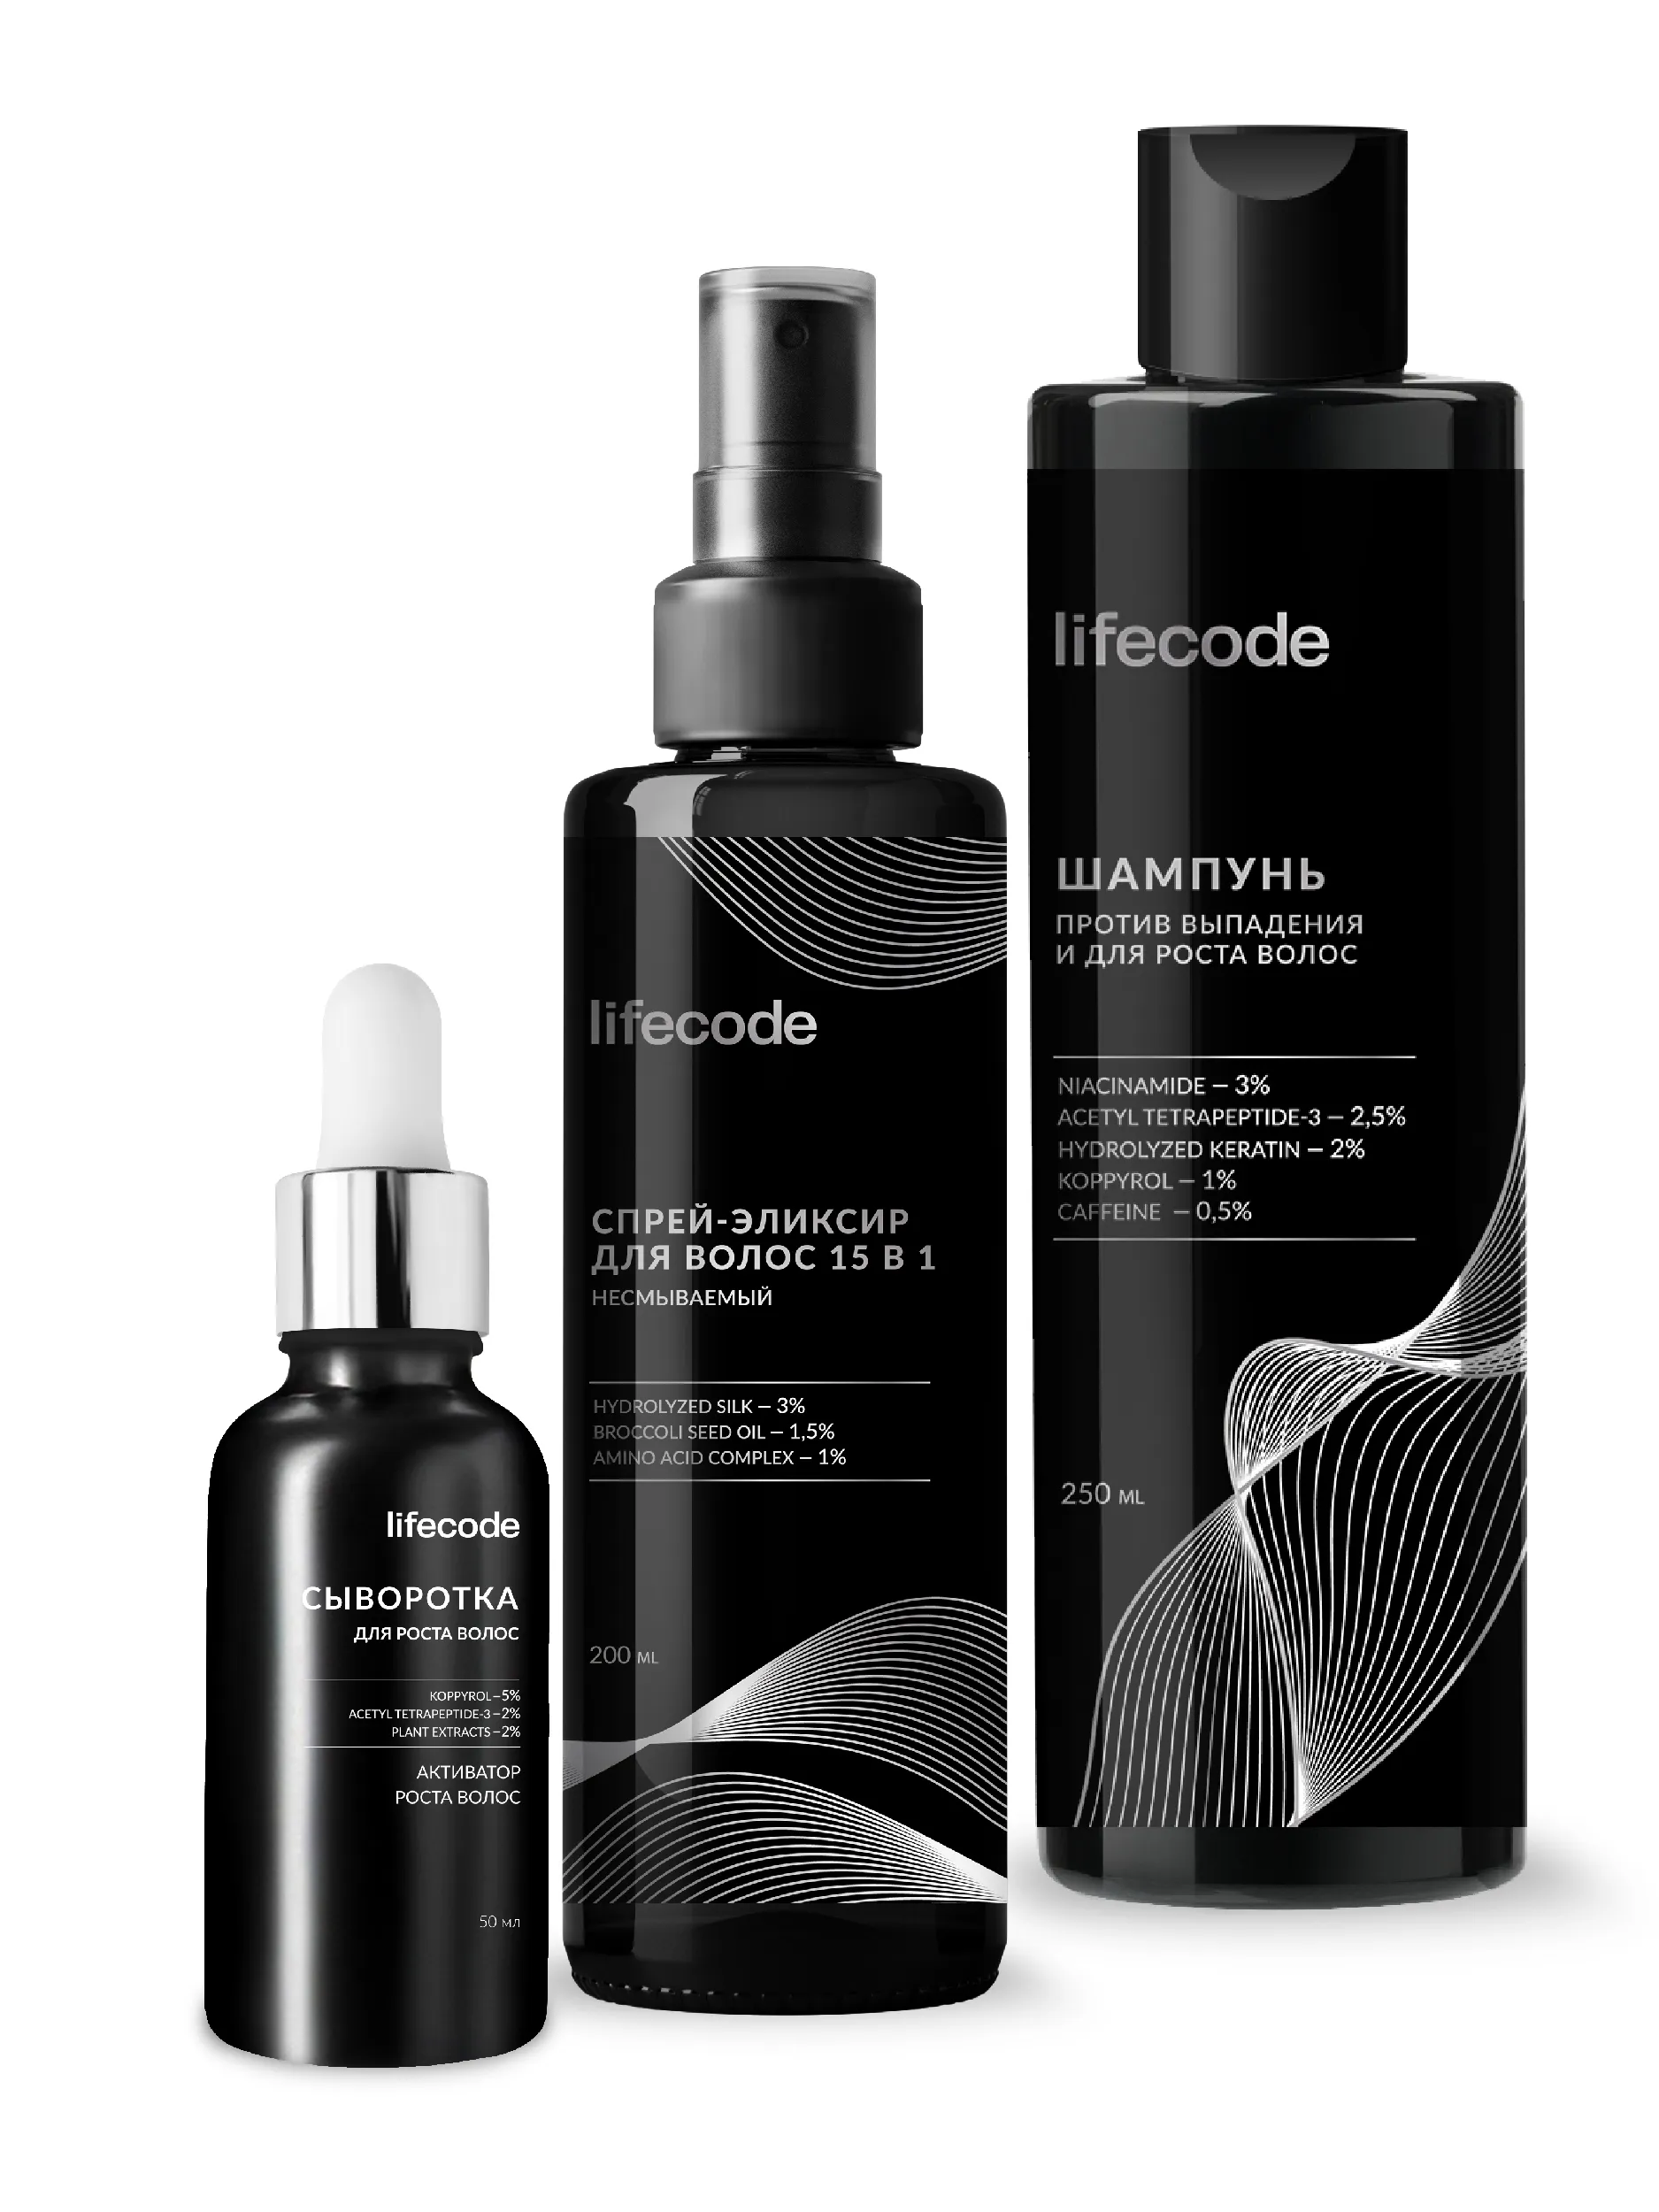 Набор для ухода и восстановления волос - купить в интернет-магазине косметики Lifecode